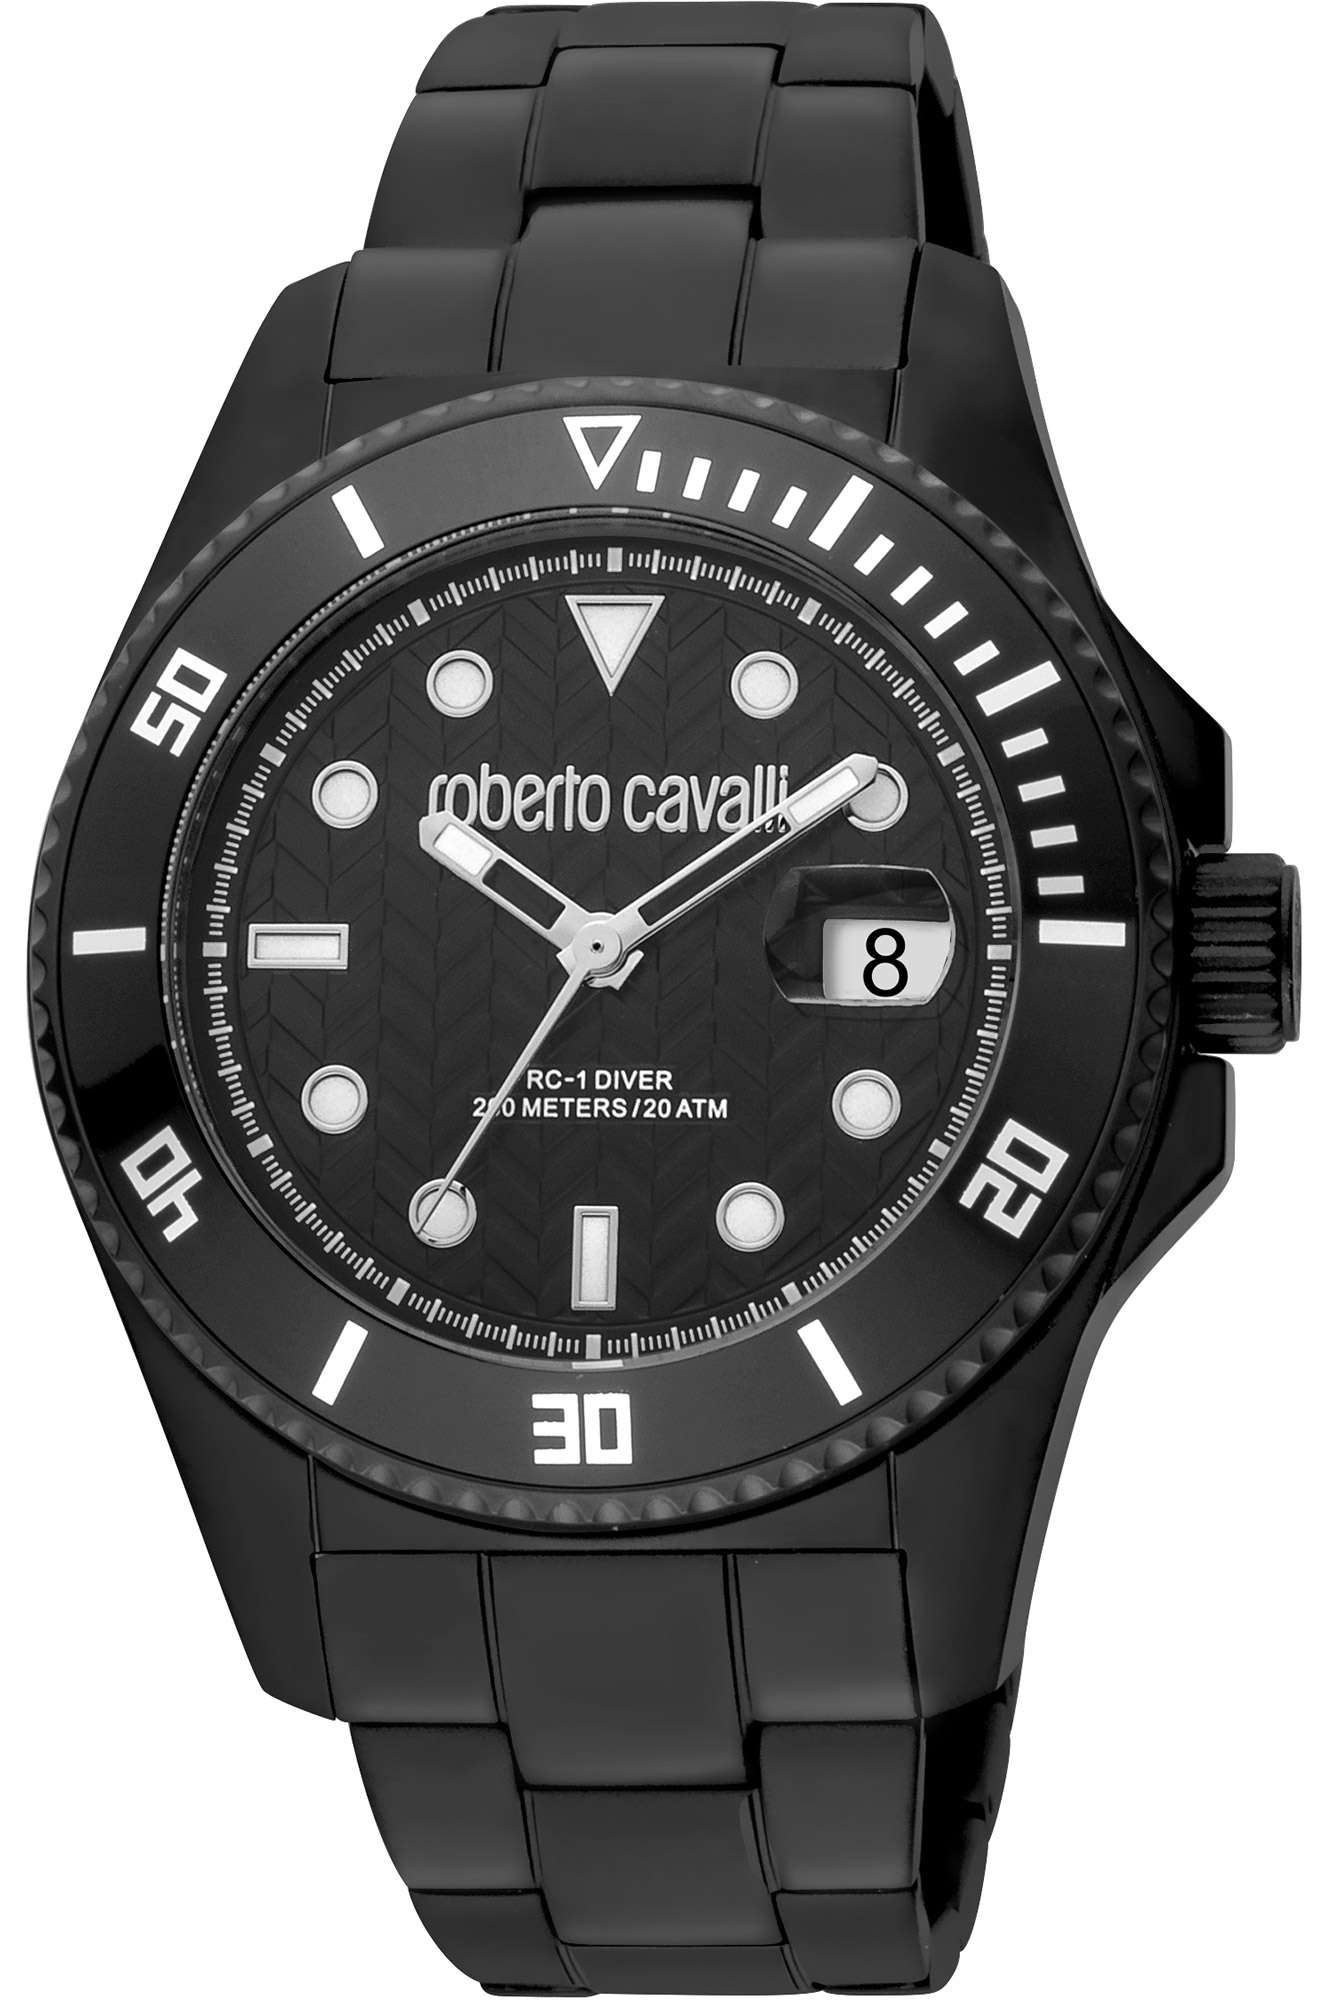 Uhr Roberto Cavalli rc5g042m0065